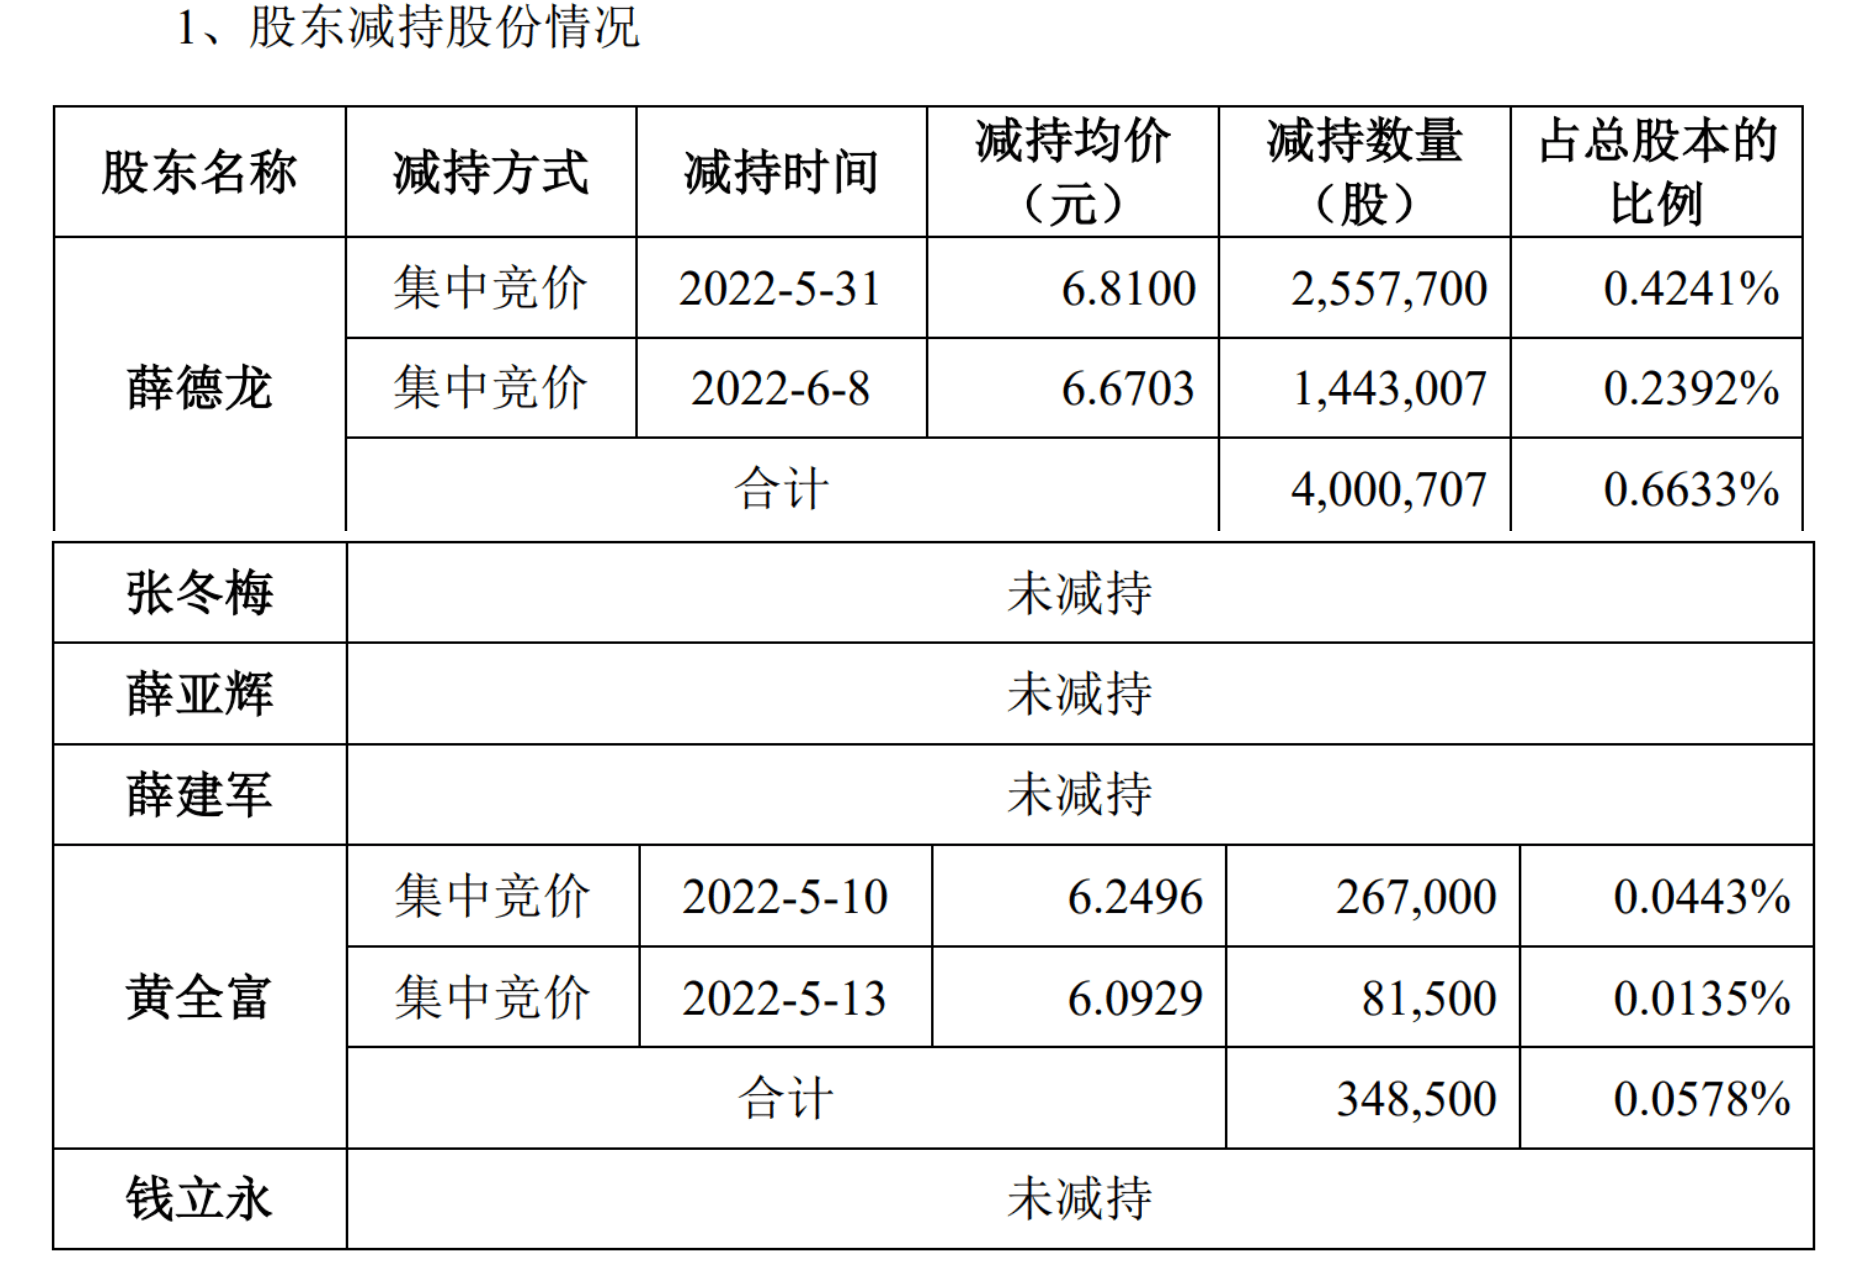 中原内配股东薛德龙已减持约0.66%股份